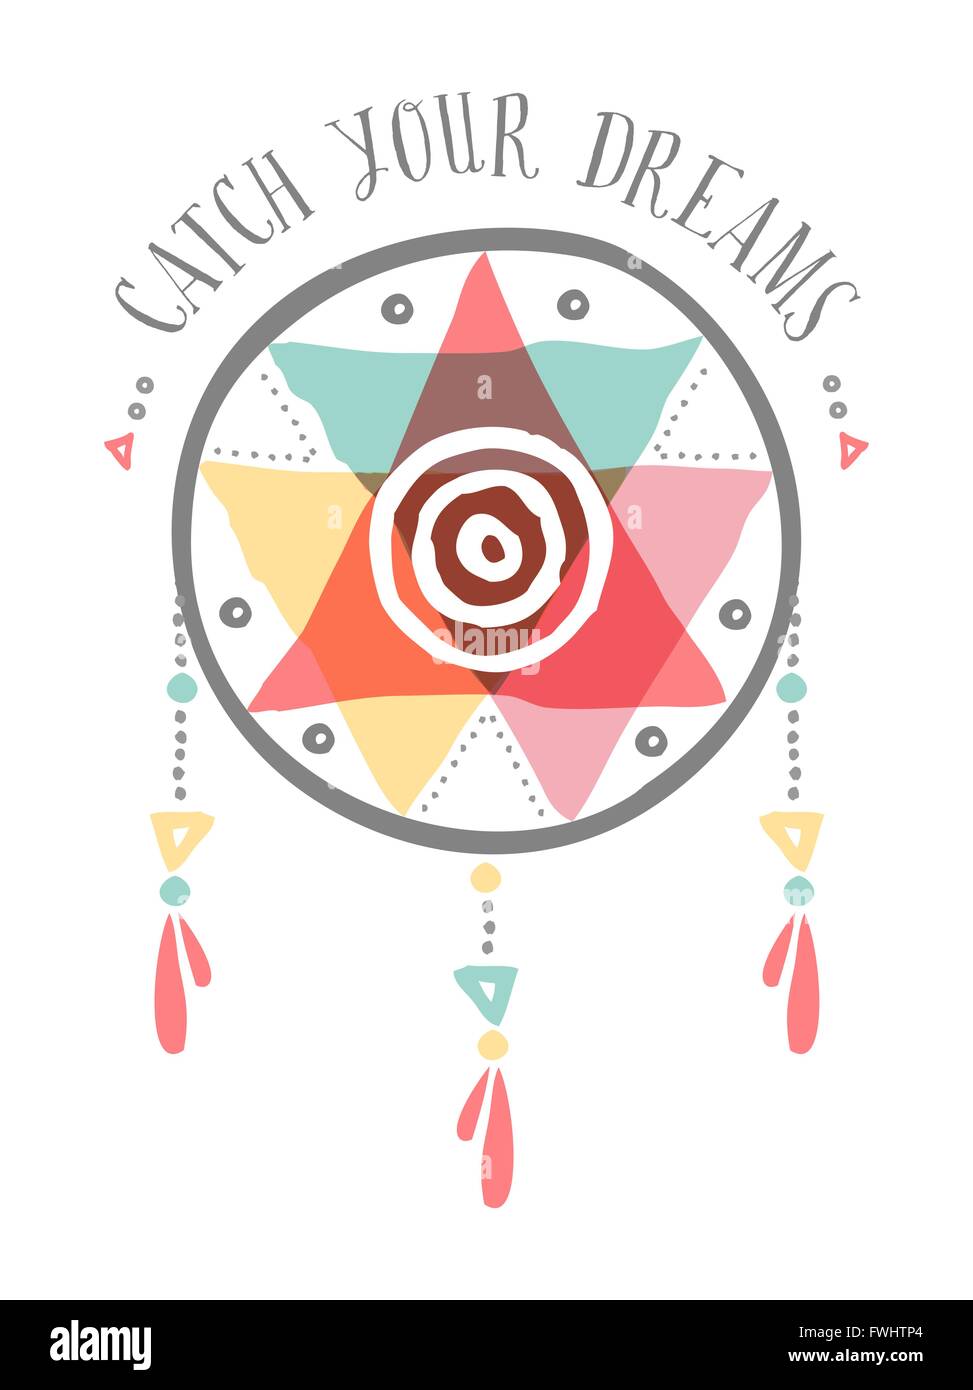 Fangen Sie Ihre Träume Boho Illustration, Stammes-indianischen Dreamcatcher mit bunten Formen und spirituellen Elemente. Stock Vektor